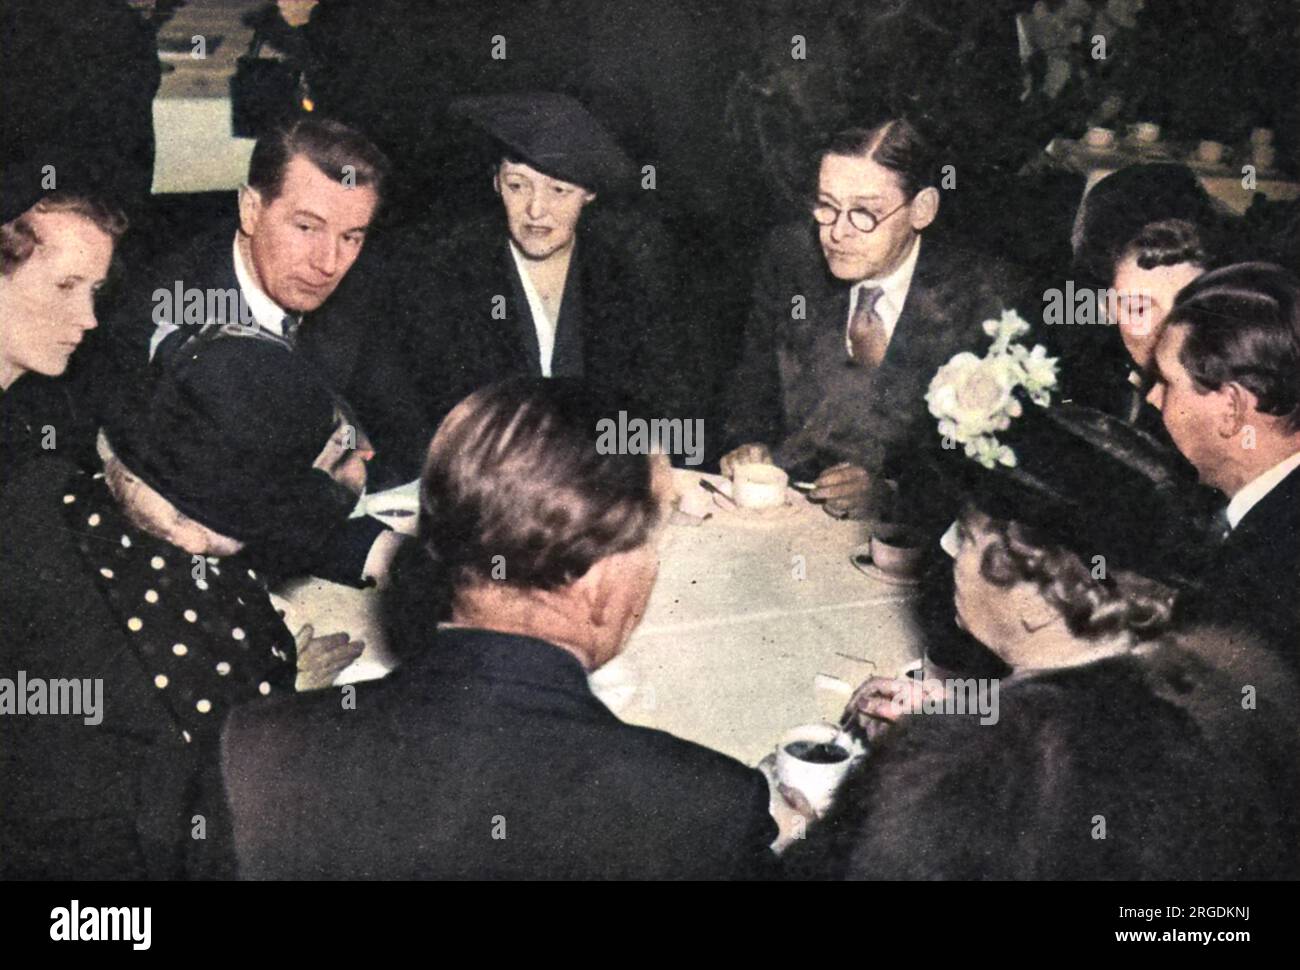 Un almuerzo en Londres de la Sociedad Anglo-Sueca para celebrar el centenario de Strindberg. El poeta T.S. Eliot presidió. De izquierda a derecha (de frente): Sra. Lundborg; Sr. Michael Redgrave; Miss E Sprigge; Sr. T.S. Eliot; Sra. Michael Redgrave (Rachel Kempson). Foto de stock